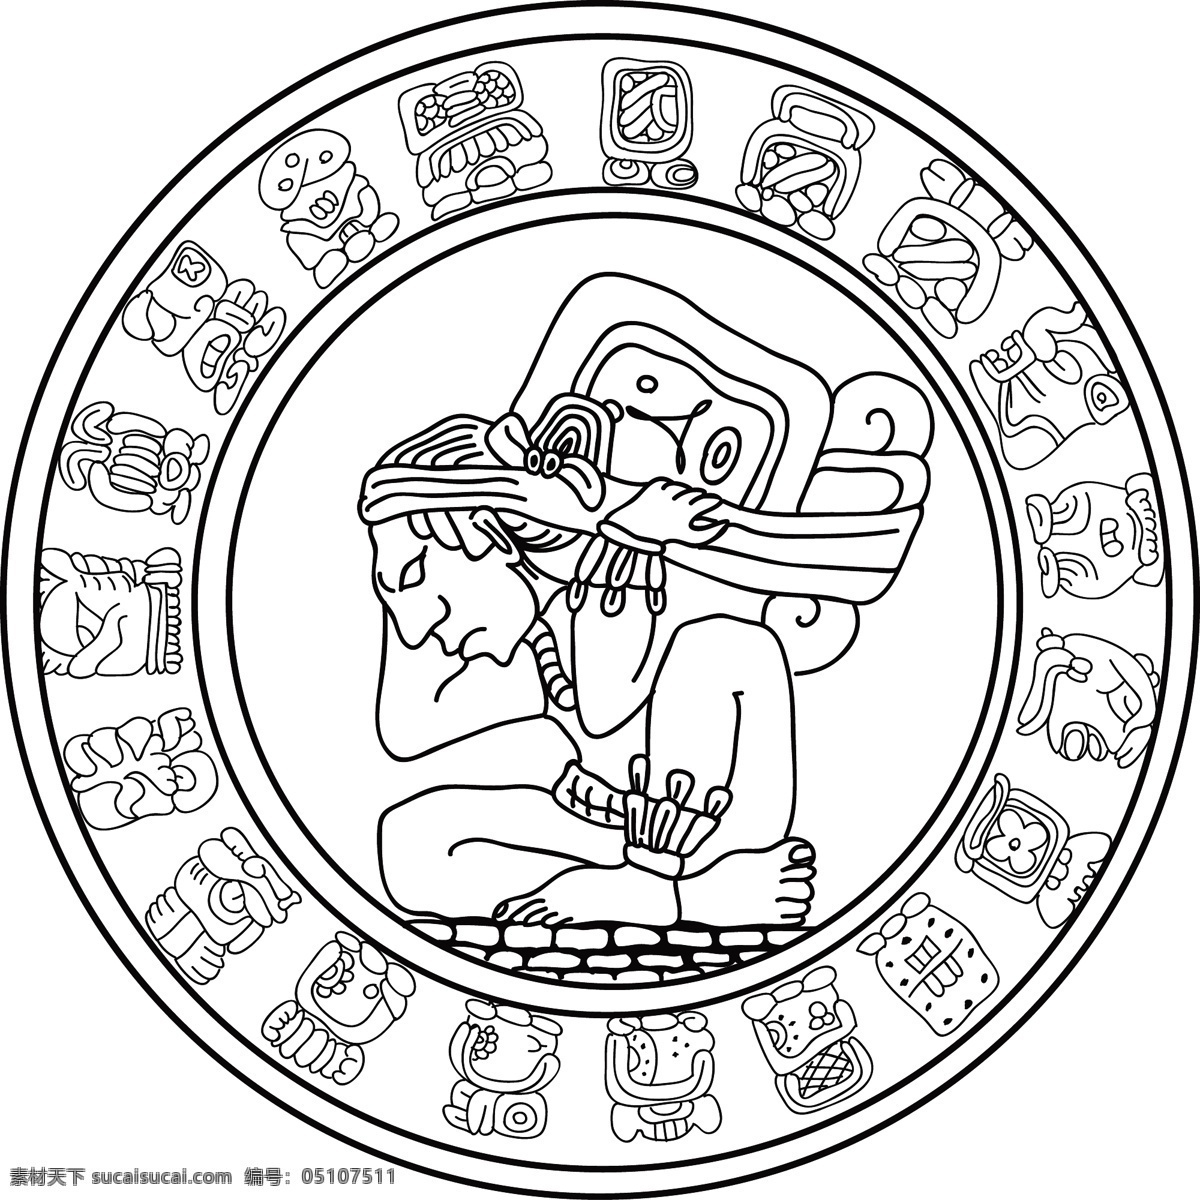 玛雅符号 玛雅 符号 图形 人物 动物 线条 花纹 抽象 矢量素材 其他矢量 矢量